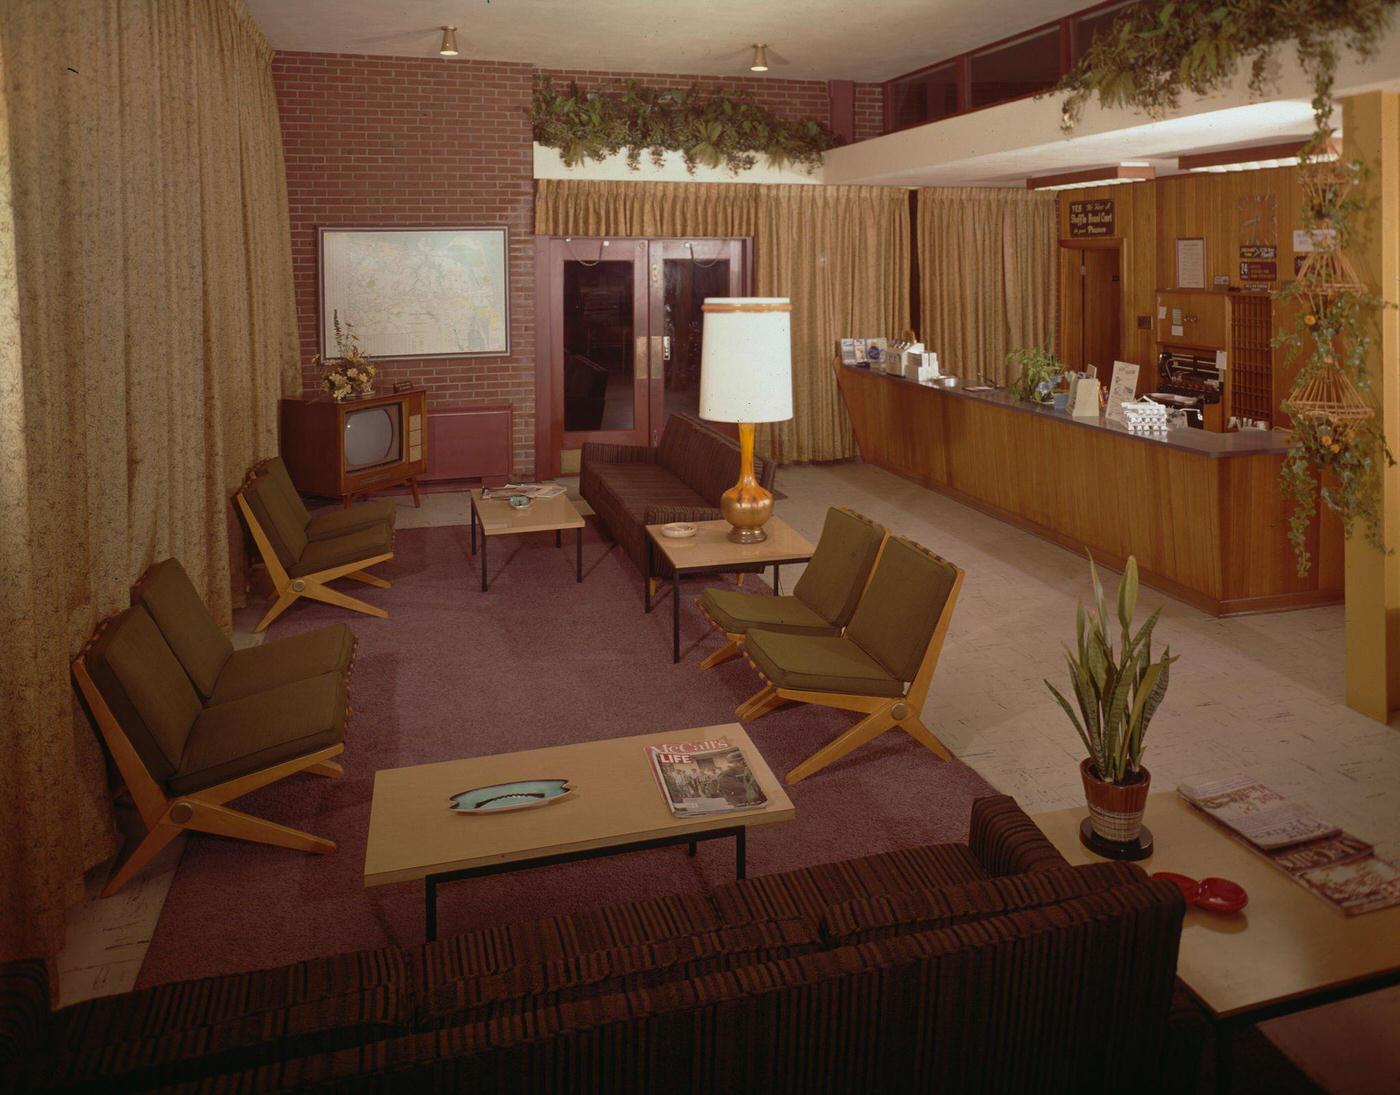 Ocean Ranch Motel, Montauk, New York, 1965